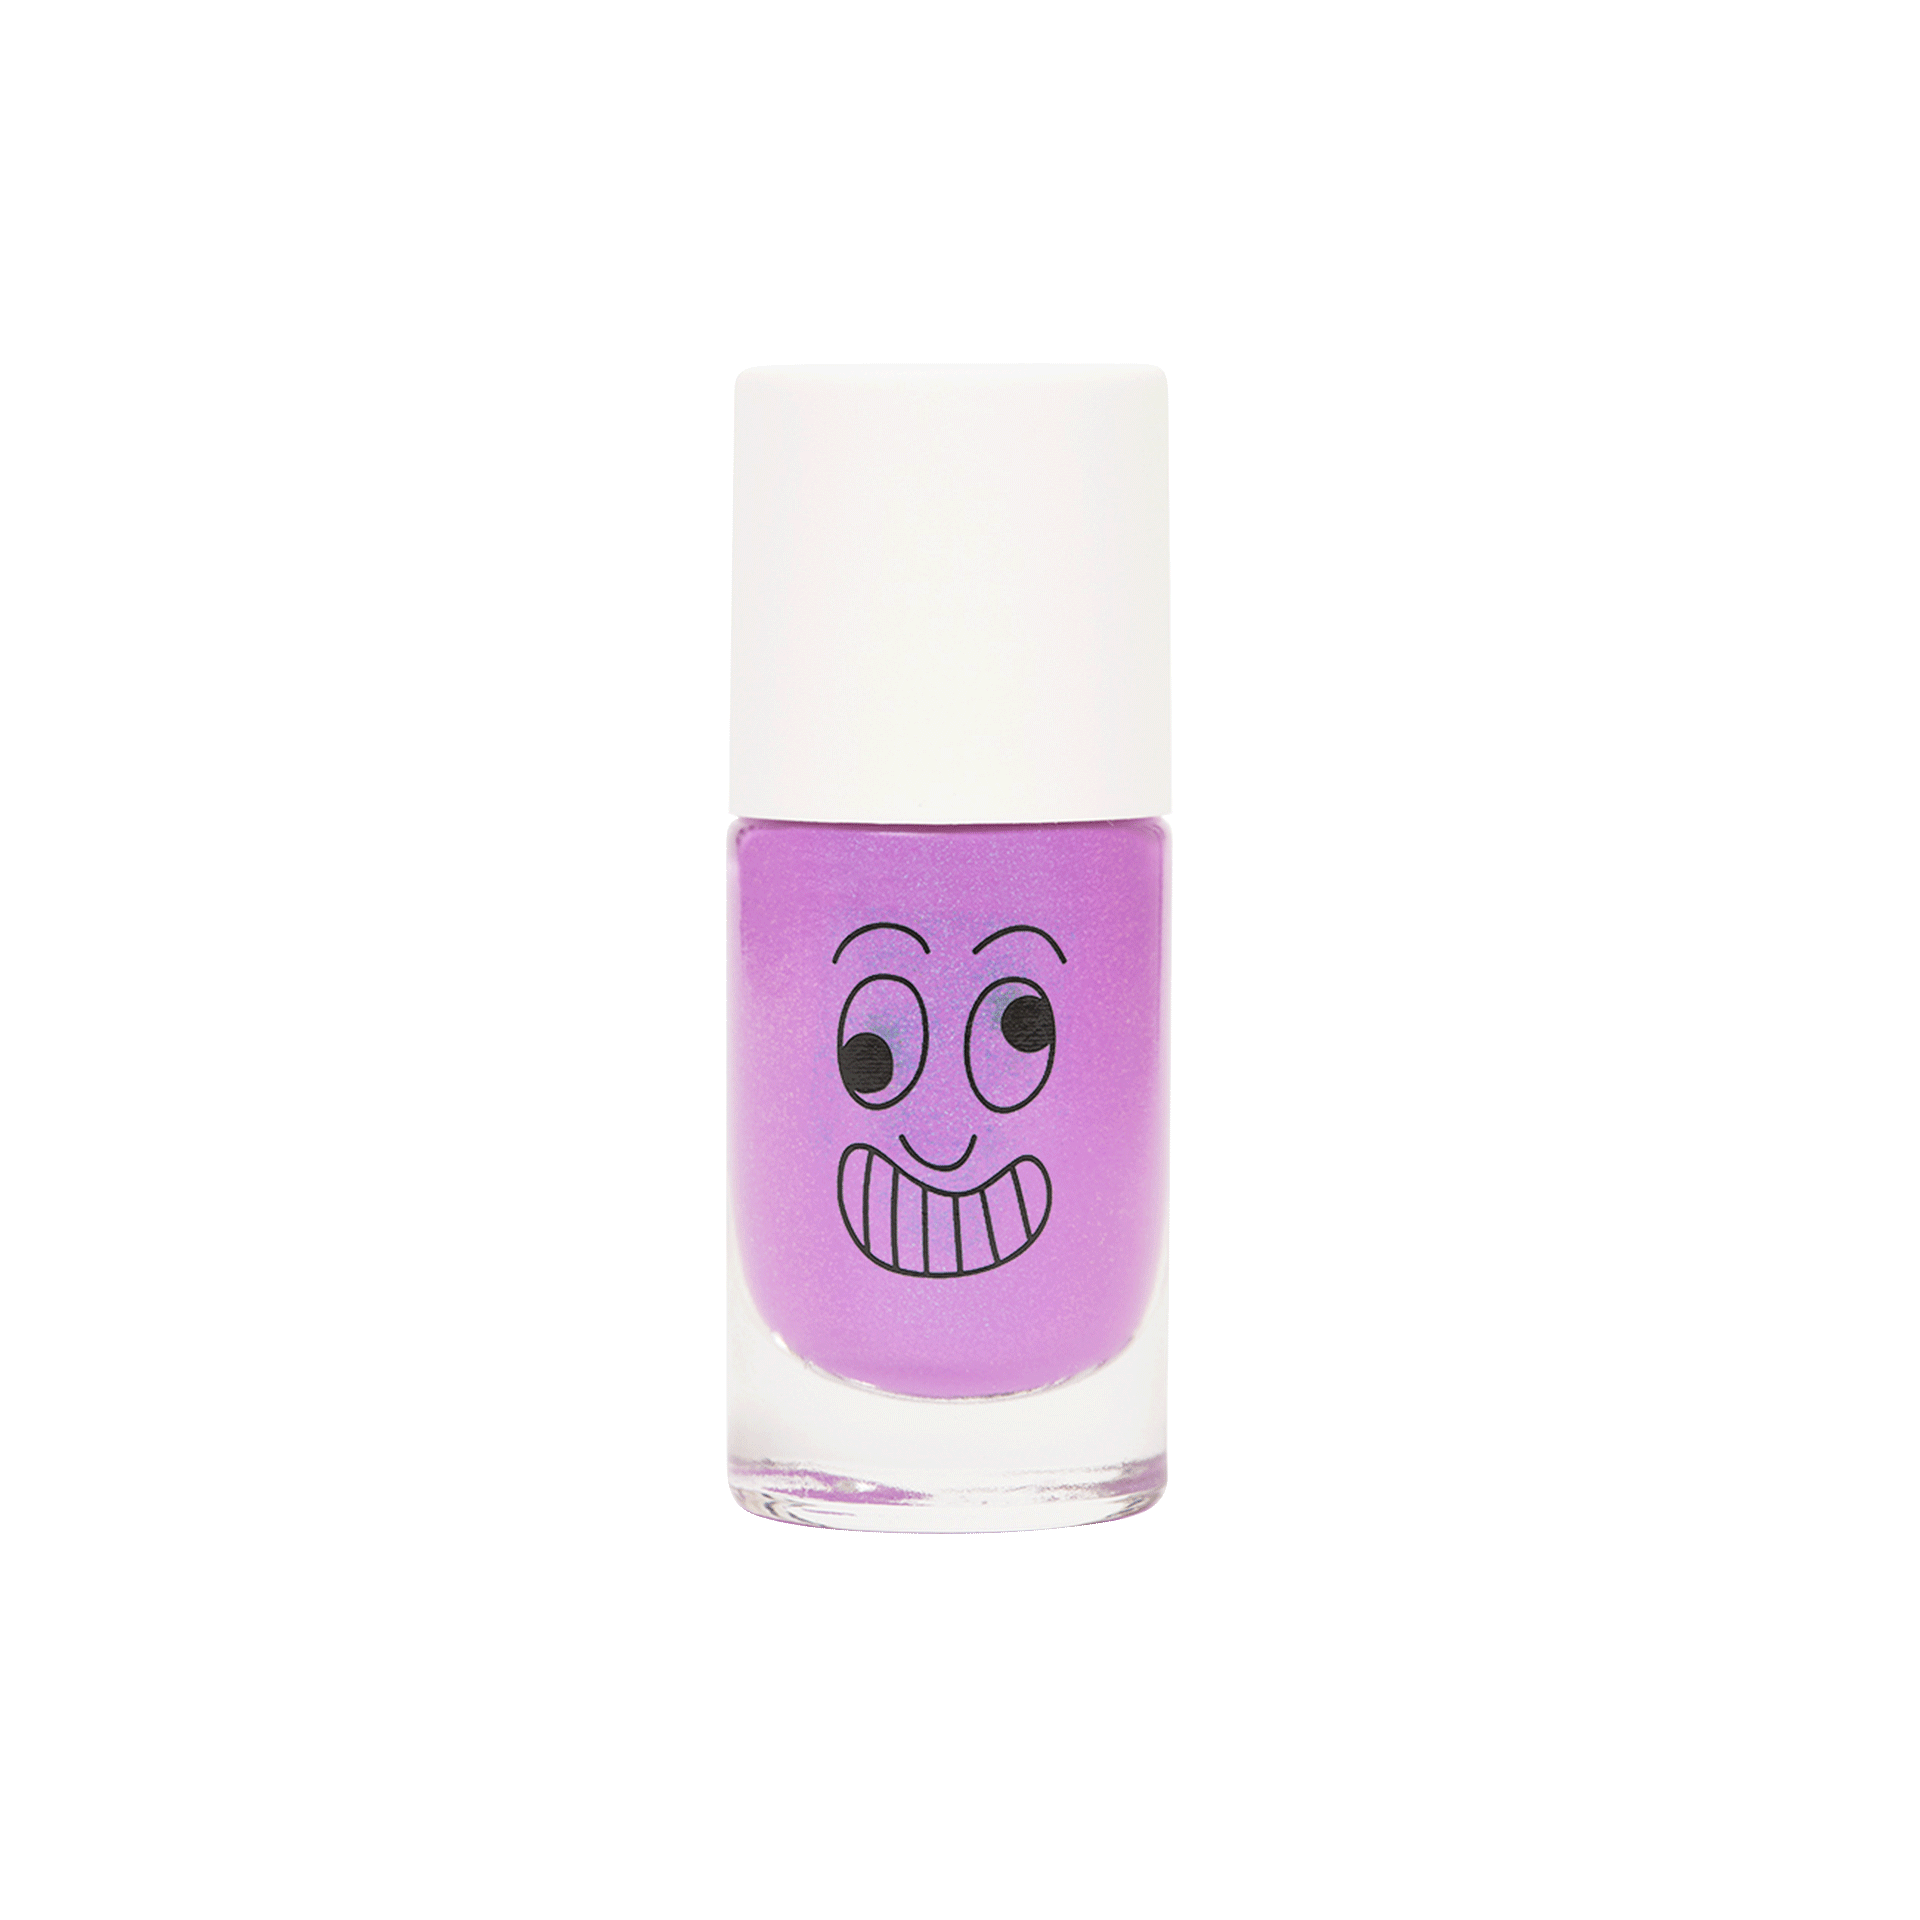 water-based kid nail polish Marshi neon lilac pearl nail polish for kid without packaging nailmatic kids